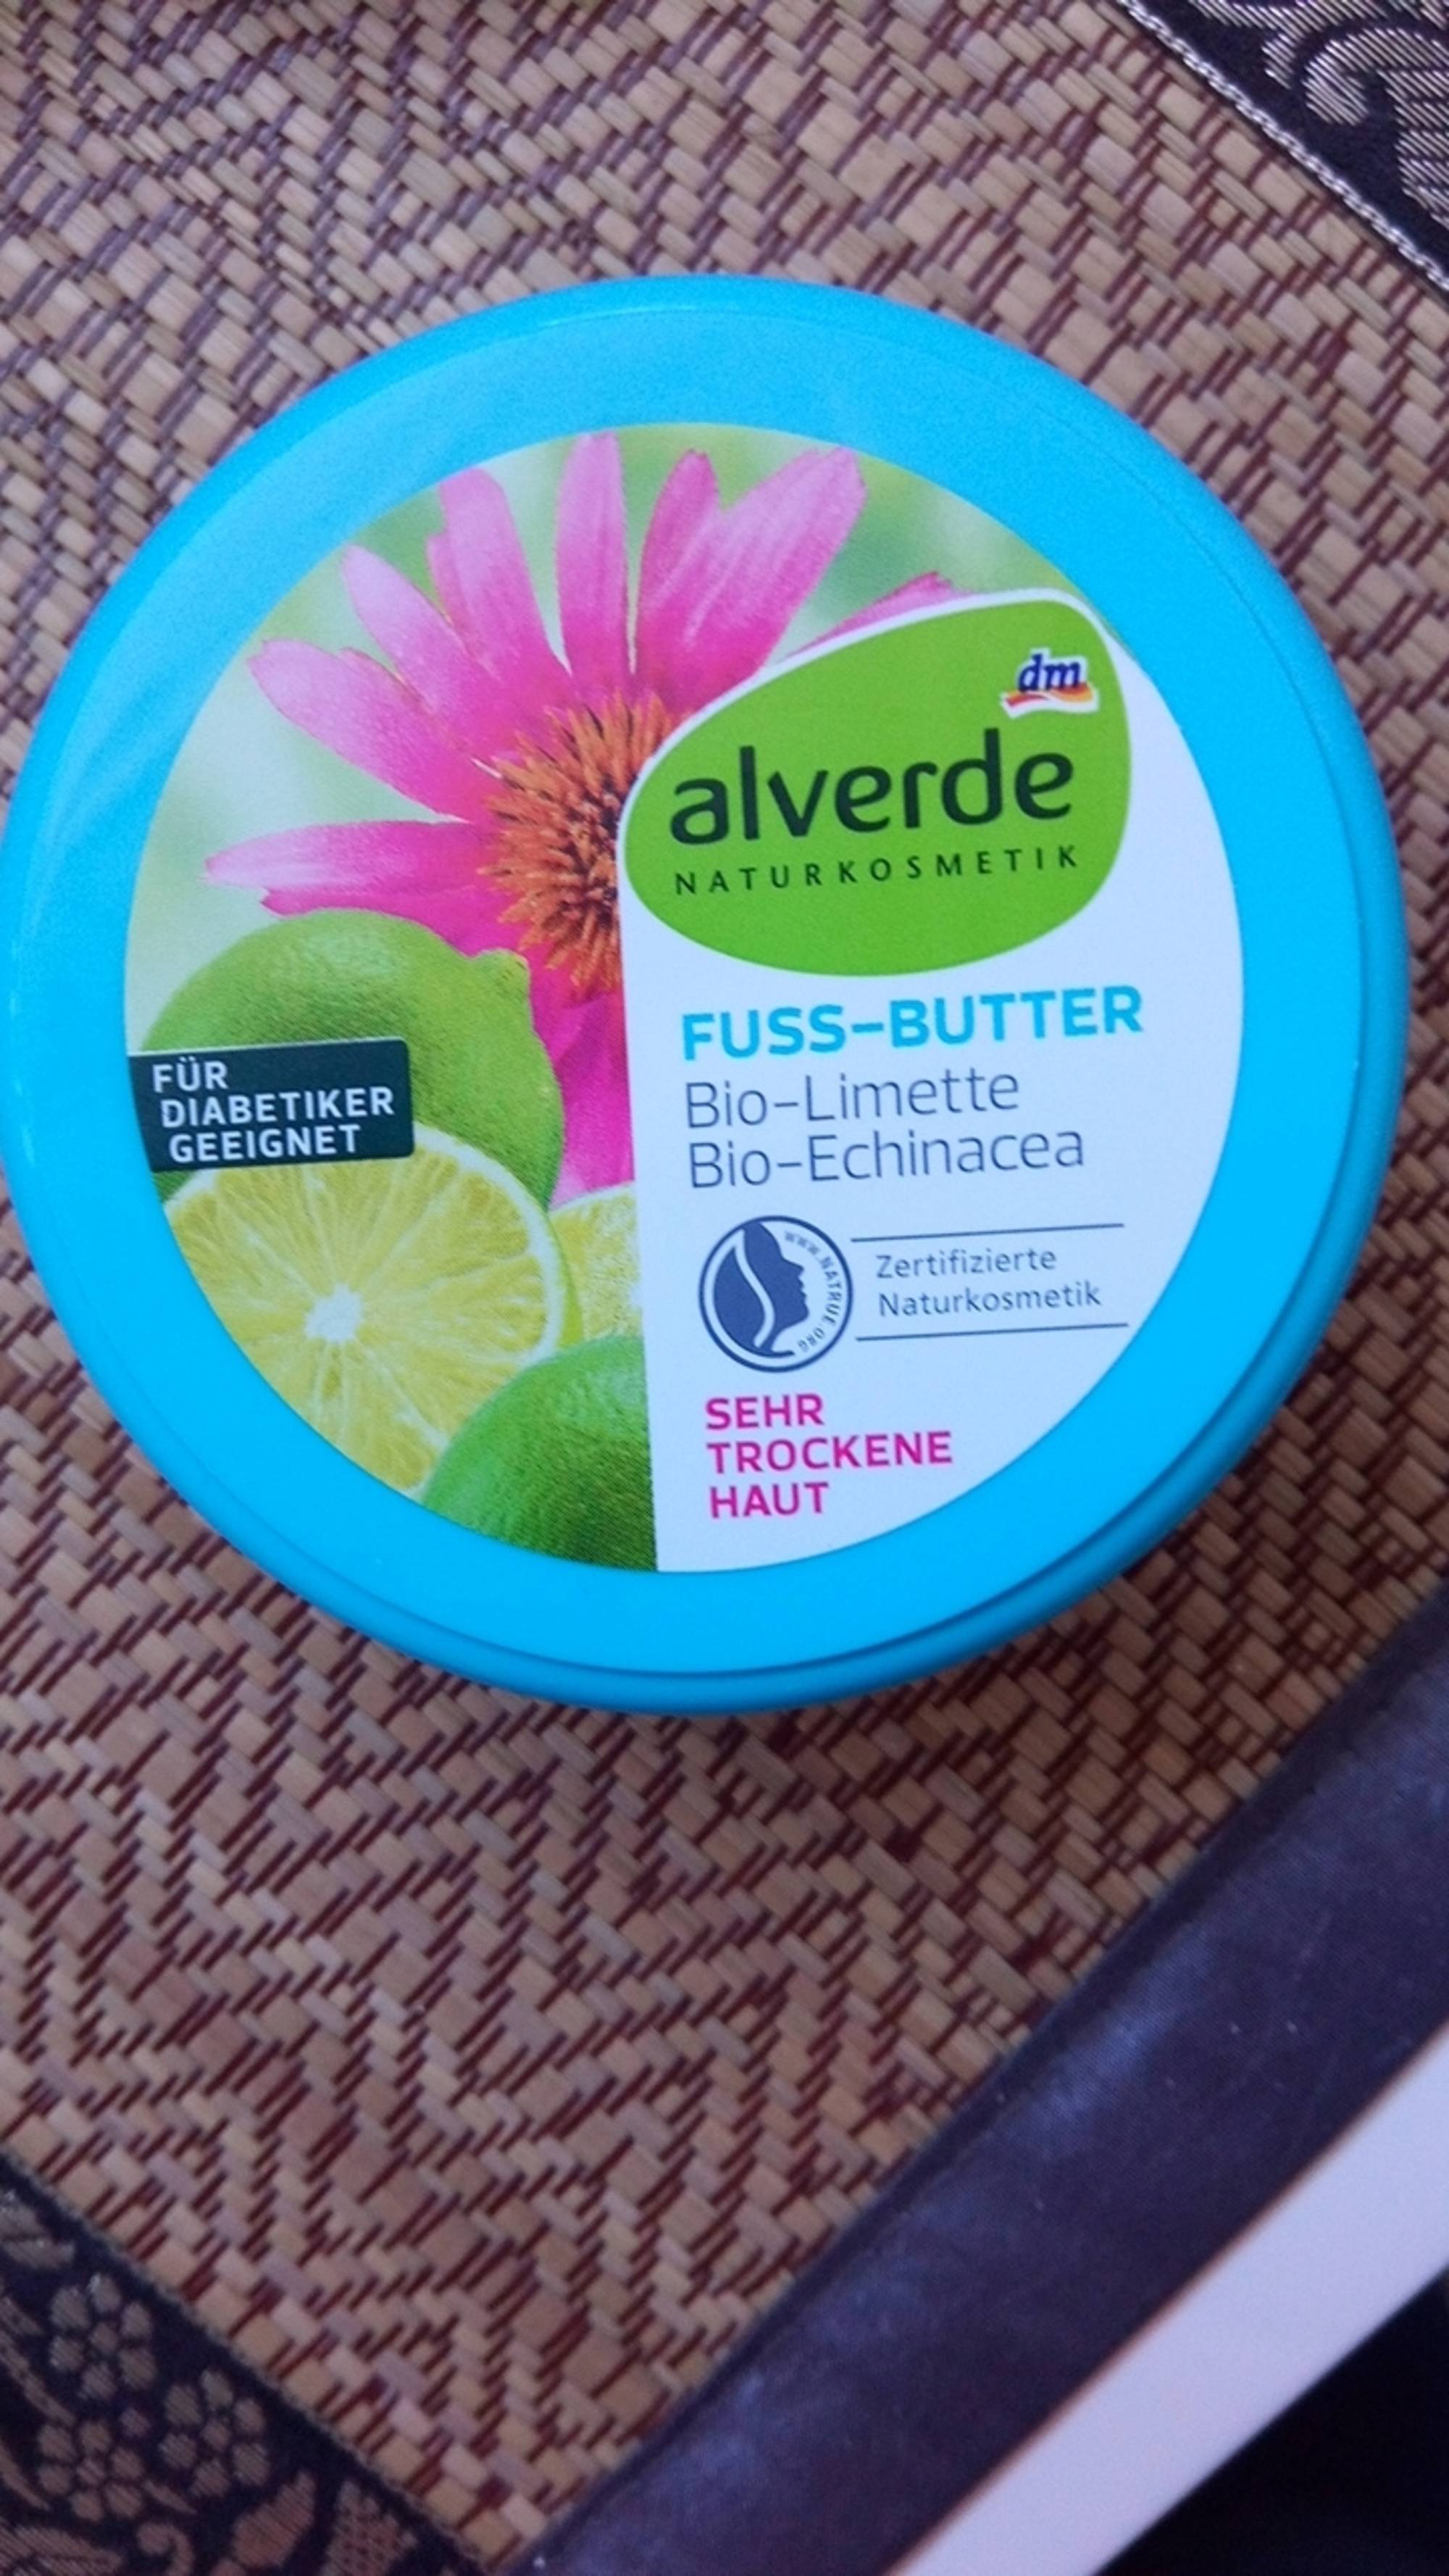 ALVERDE NATURKOSMETIK - Fuss butter bio-limette, bio-echinacea